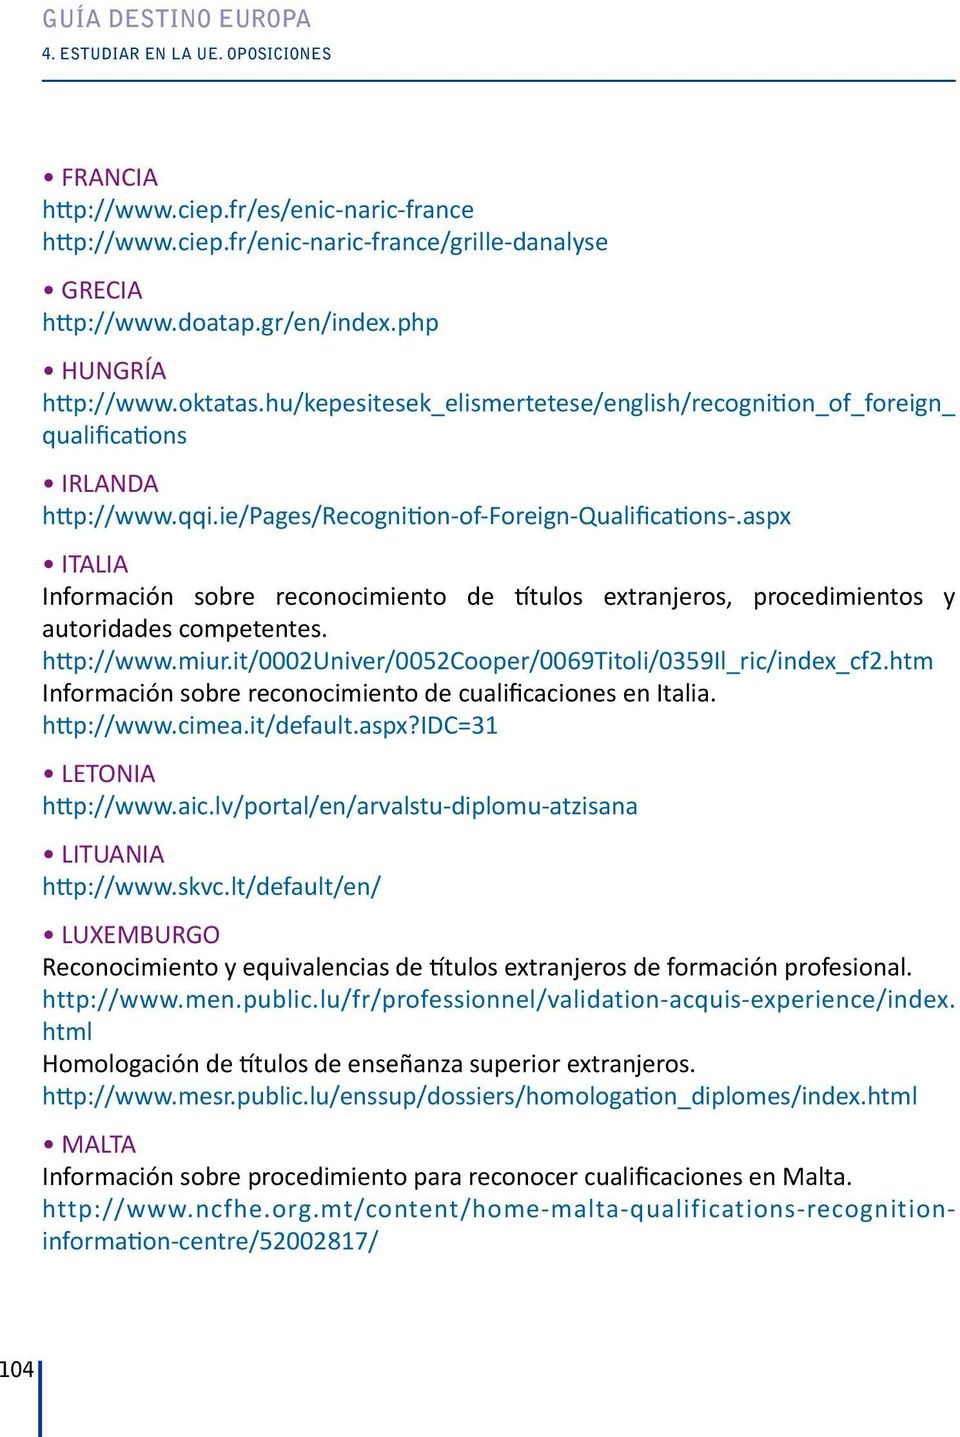 aspx ITALIA Información sobre reconocimiento de títulos extranjeros, procedimientos y autoridades competentes. http://www.miur.it/0002univer/0052cooper/0069titoli/0359il_ric/index_cf2.